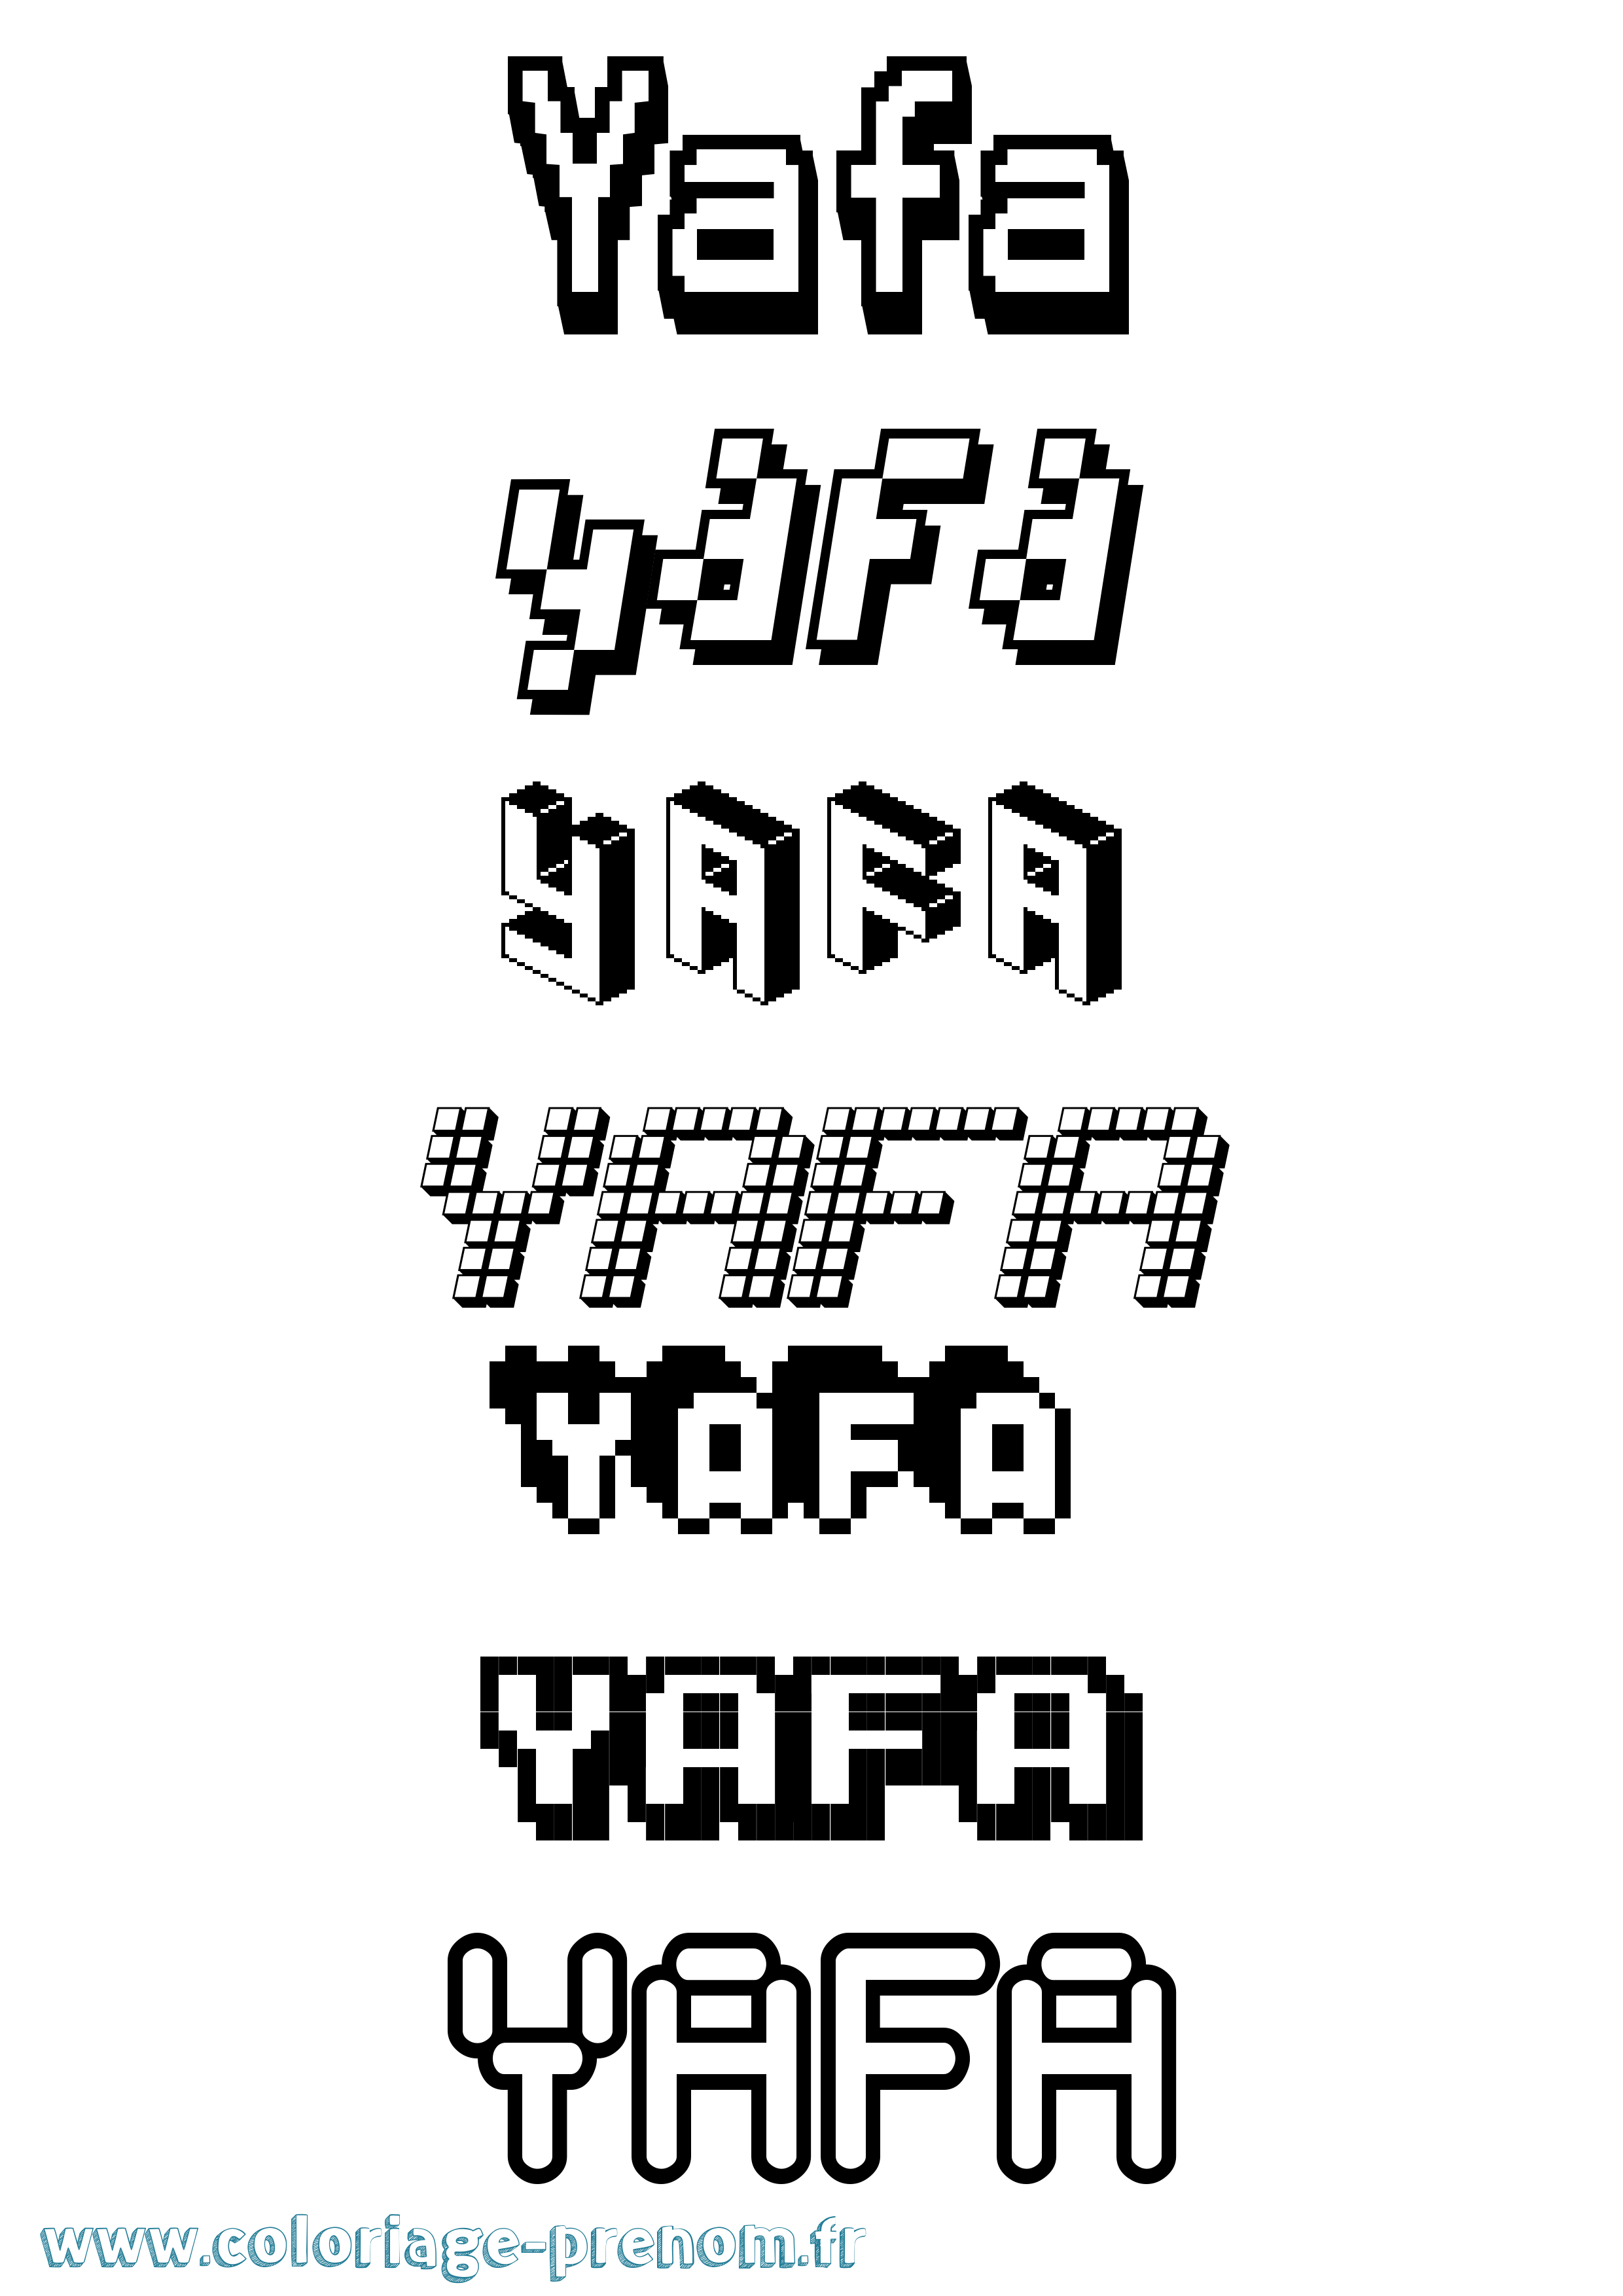 Coloriage prénom Yafa Pixel